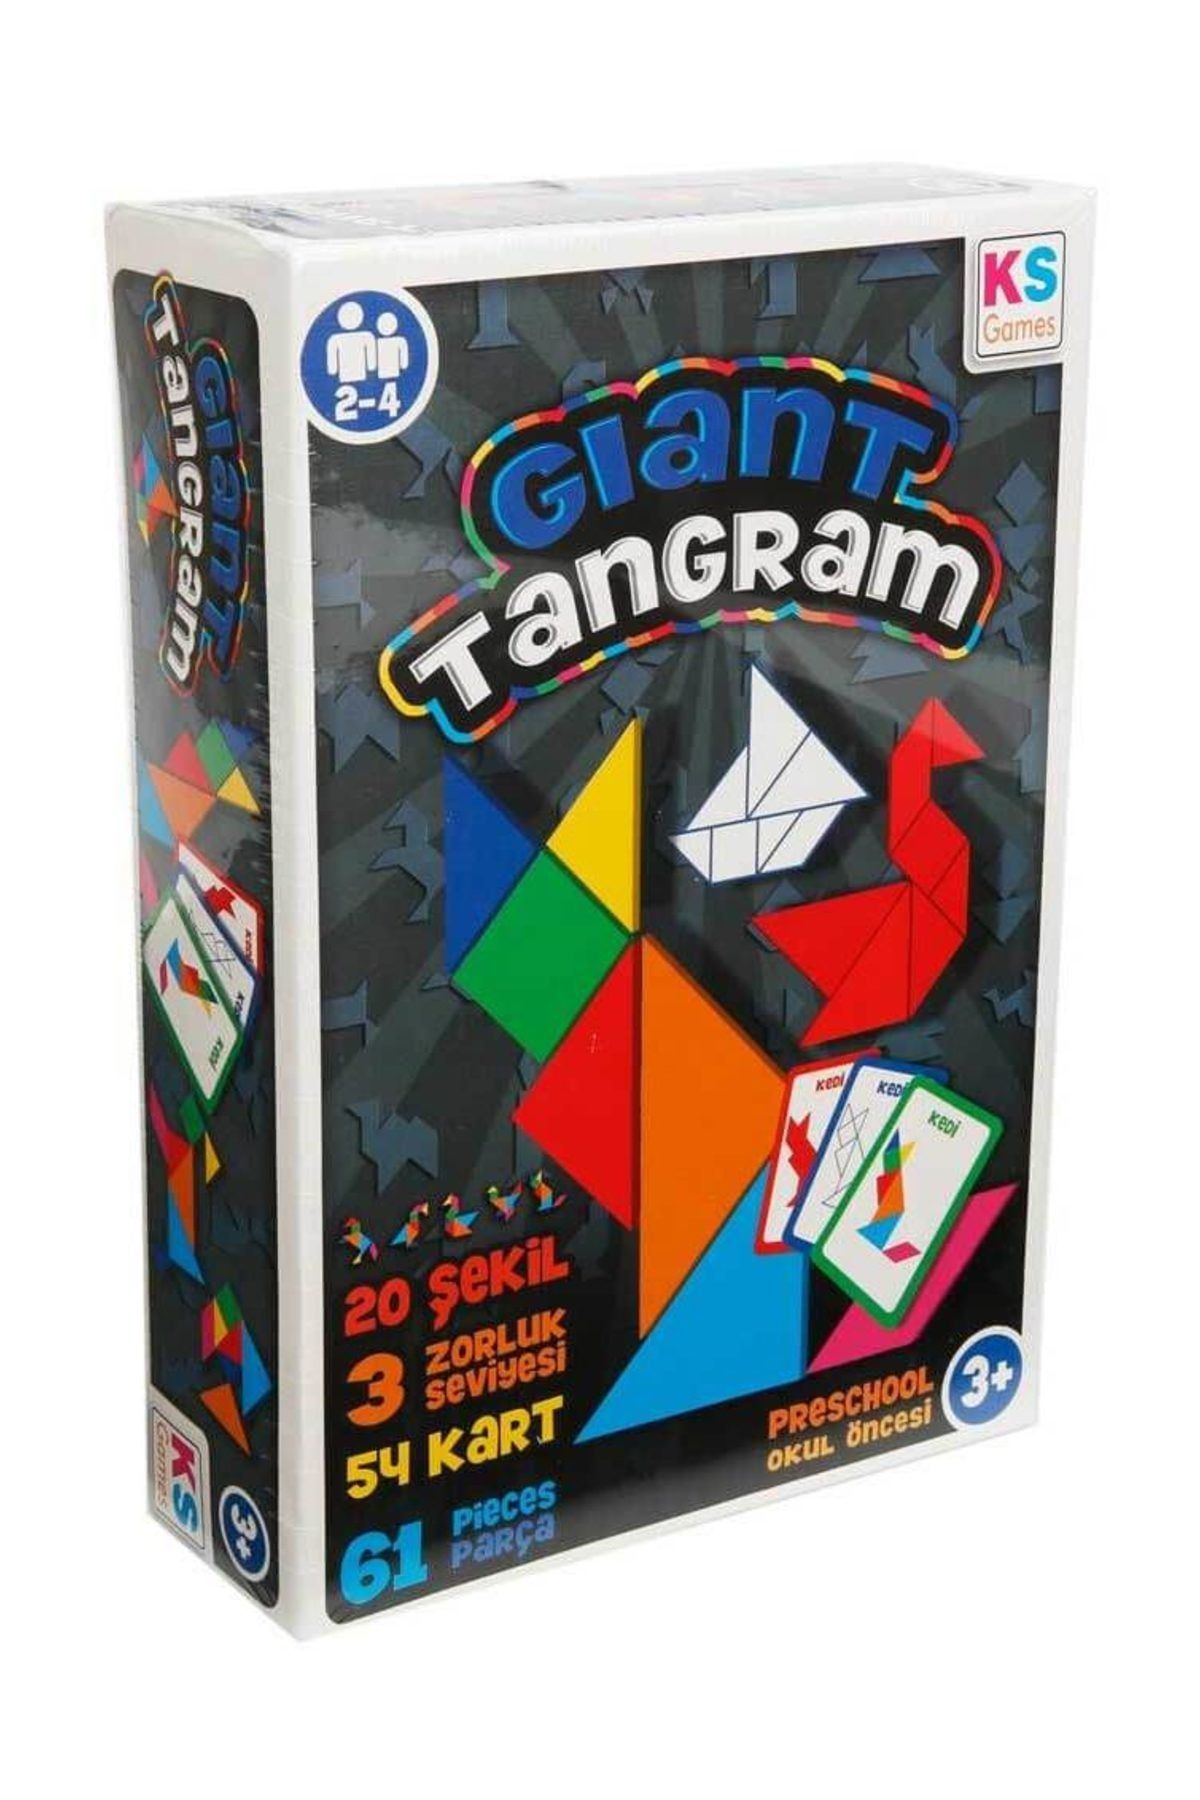 Ooshies Giant Tangram